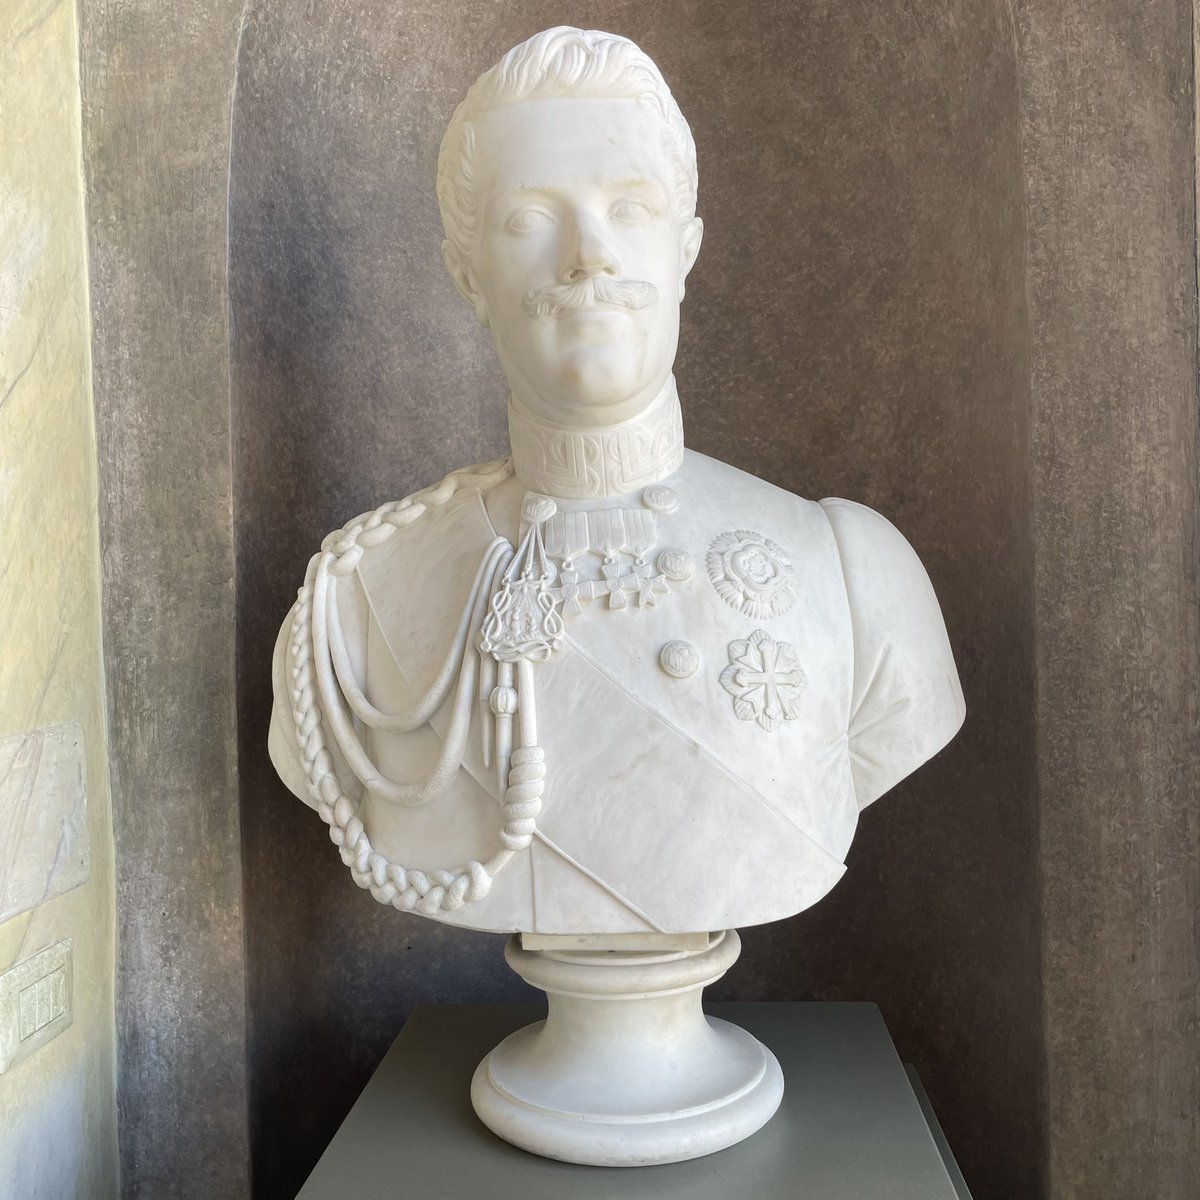 Aujourd’hui, on a visité deux palais.

Tout d’abord le Palais royal, au centre de Turin.

Il abrite des portraits et bustes des Rois d’Italie...

#PalazzoReale #Torino #ReDItalia